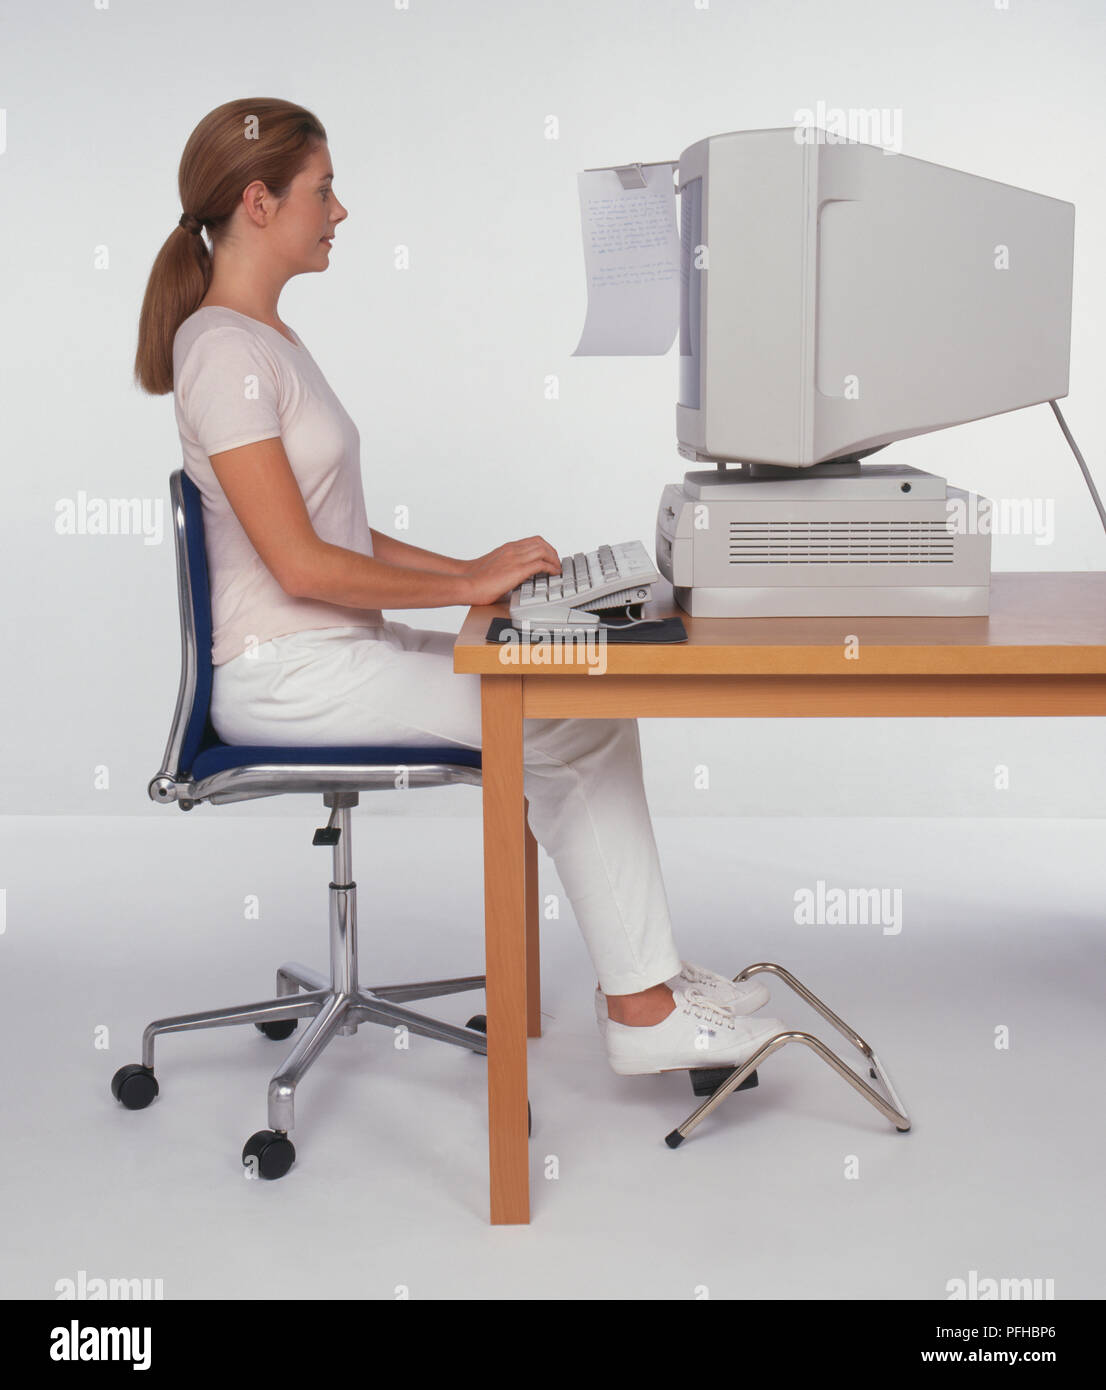 Femme assise à un bureau à l'aide d'un ordinateur, les pieds sur un repose-pied, side view Banque D'Images